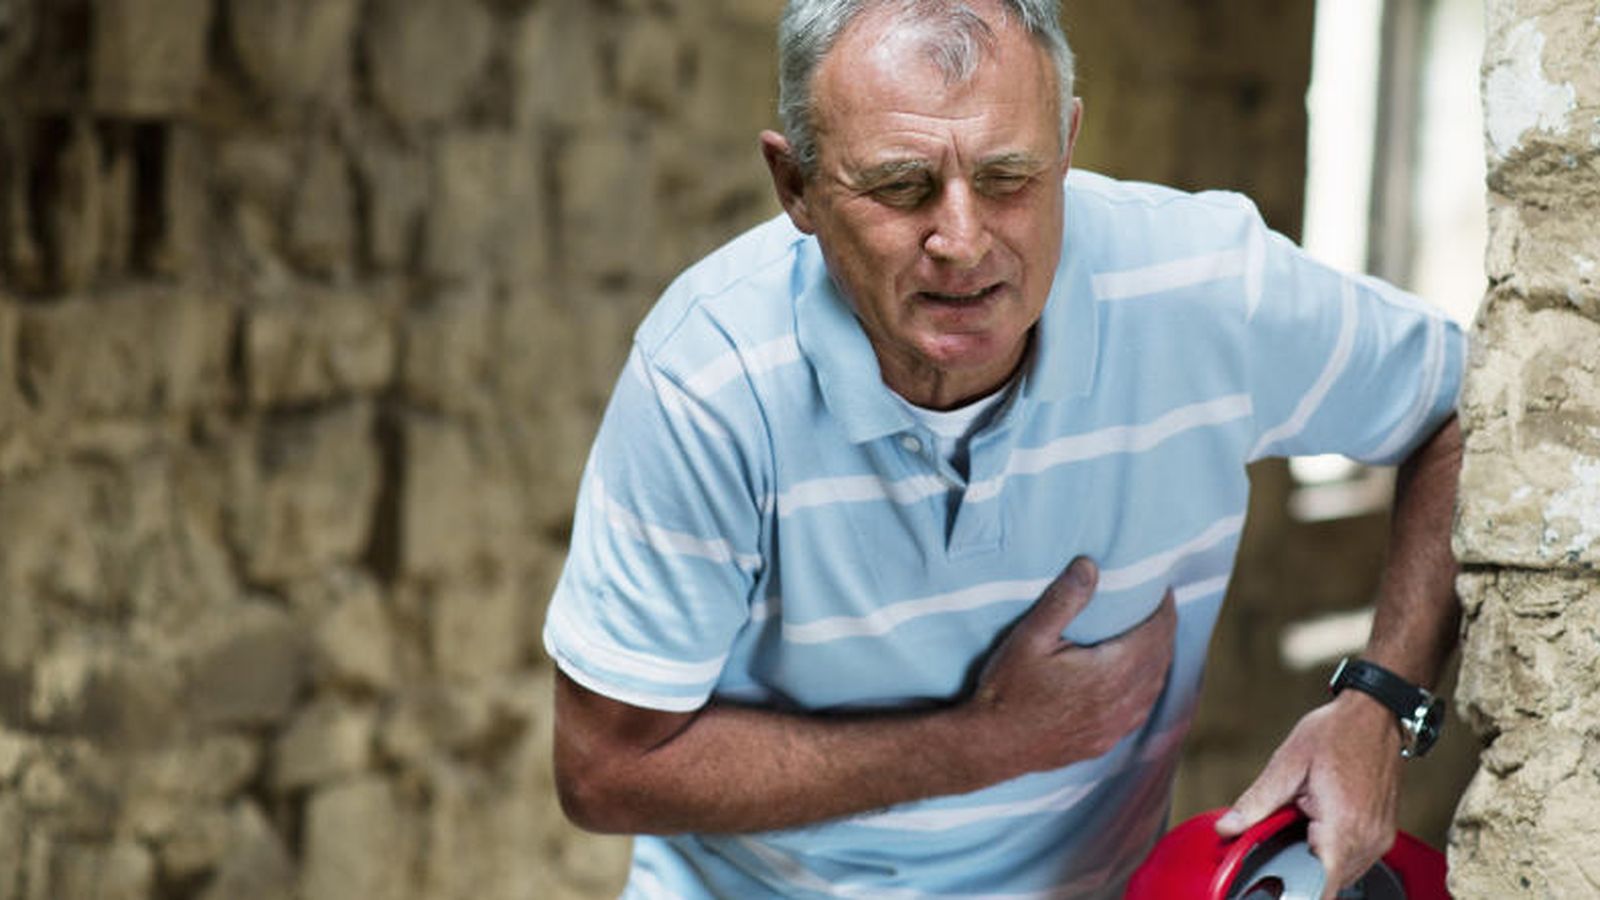 Foto: El dolor en el pecho es el síntoma más habitual de un infarto, pero no el único. (Corbis)